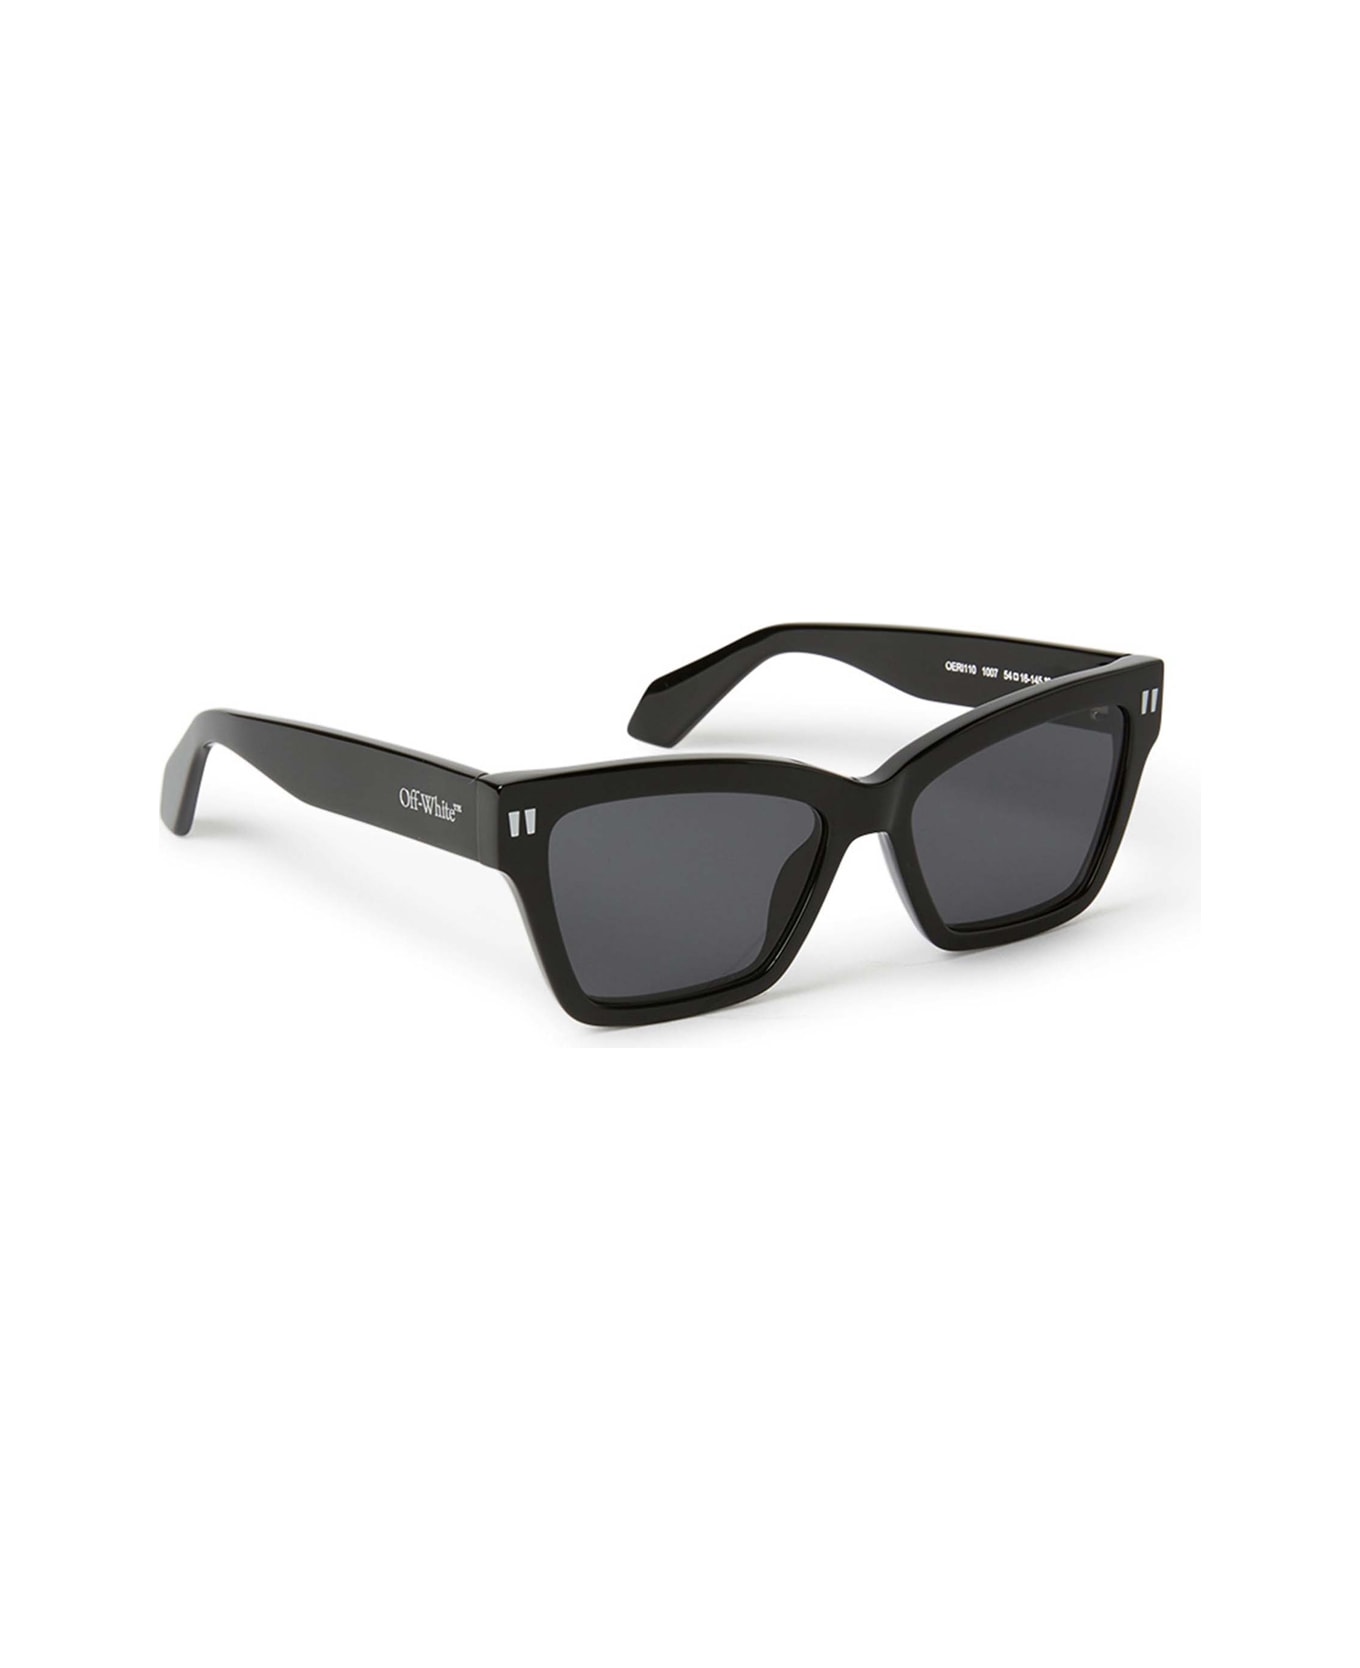 Off-White Oeri110 Cincinnati 1007 Black Sunglasses - Nero